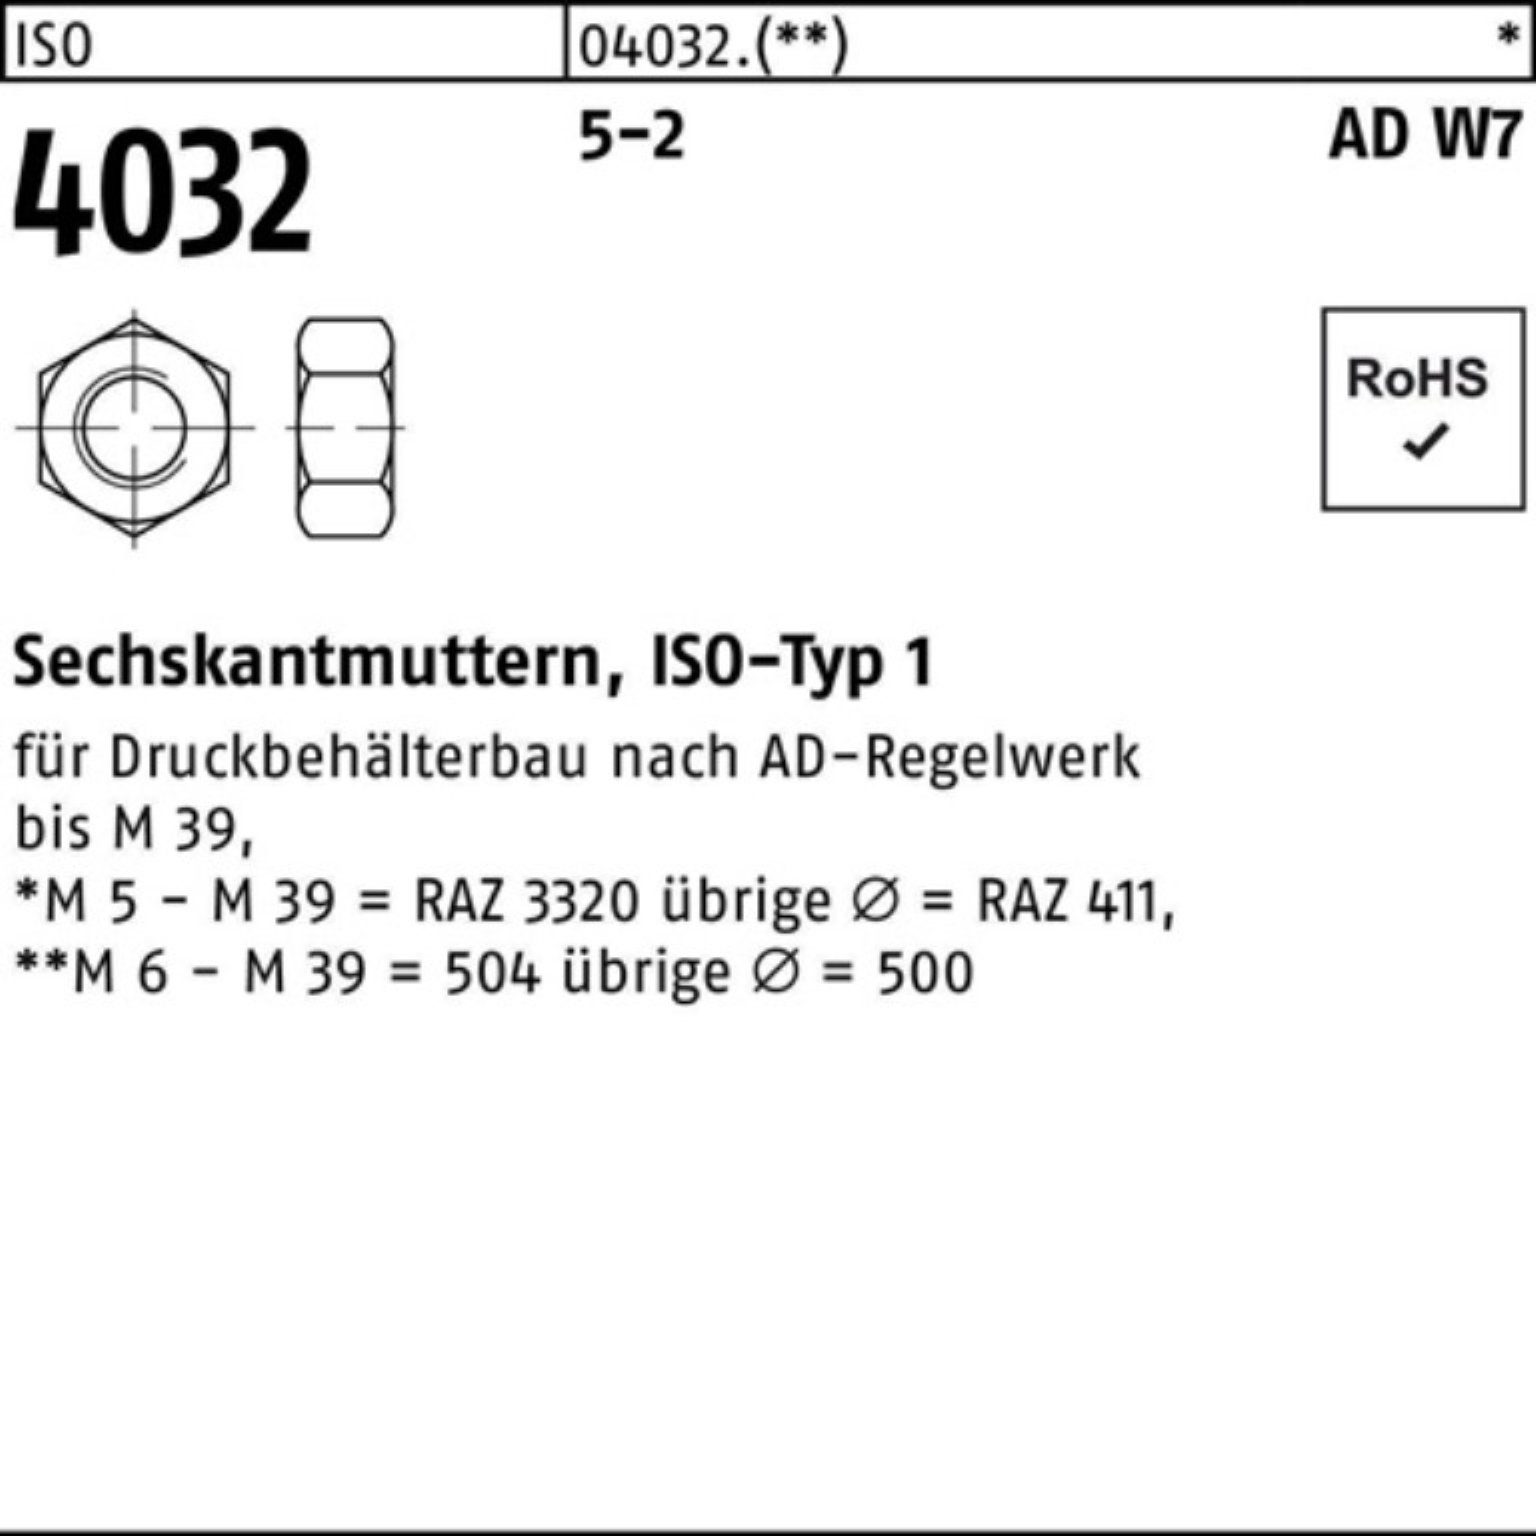 Bufab Muttern 100er Pack Sechskantmutter ISO 4032 M24 5-2 AD W7 50 Stück ISO 4032 5